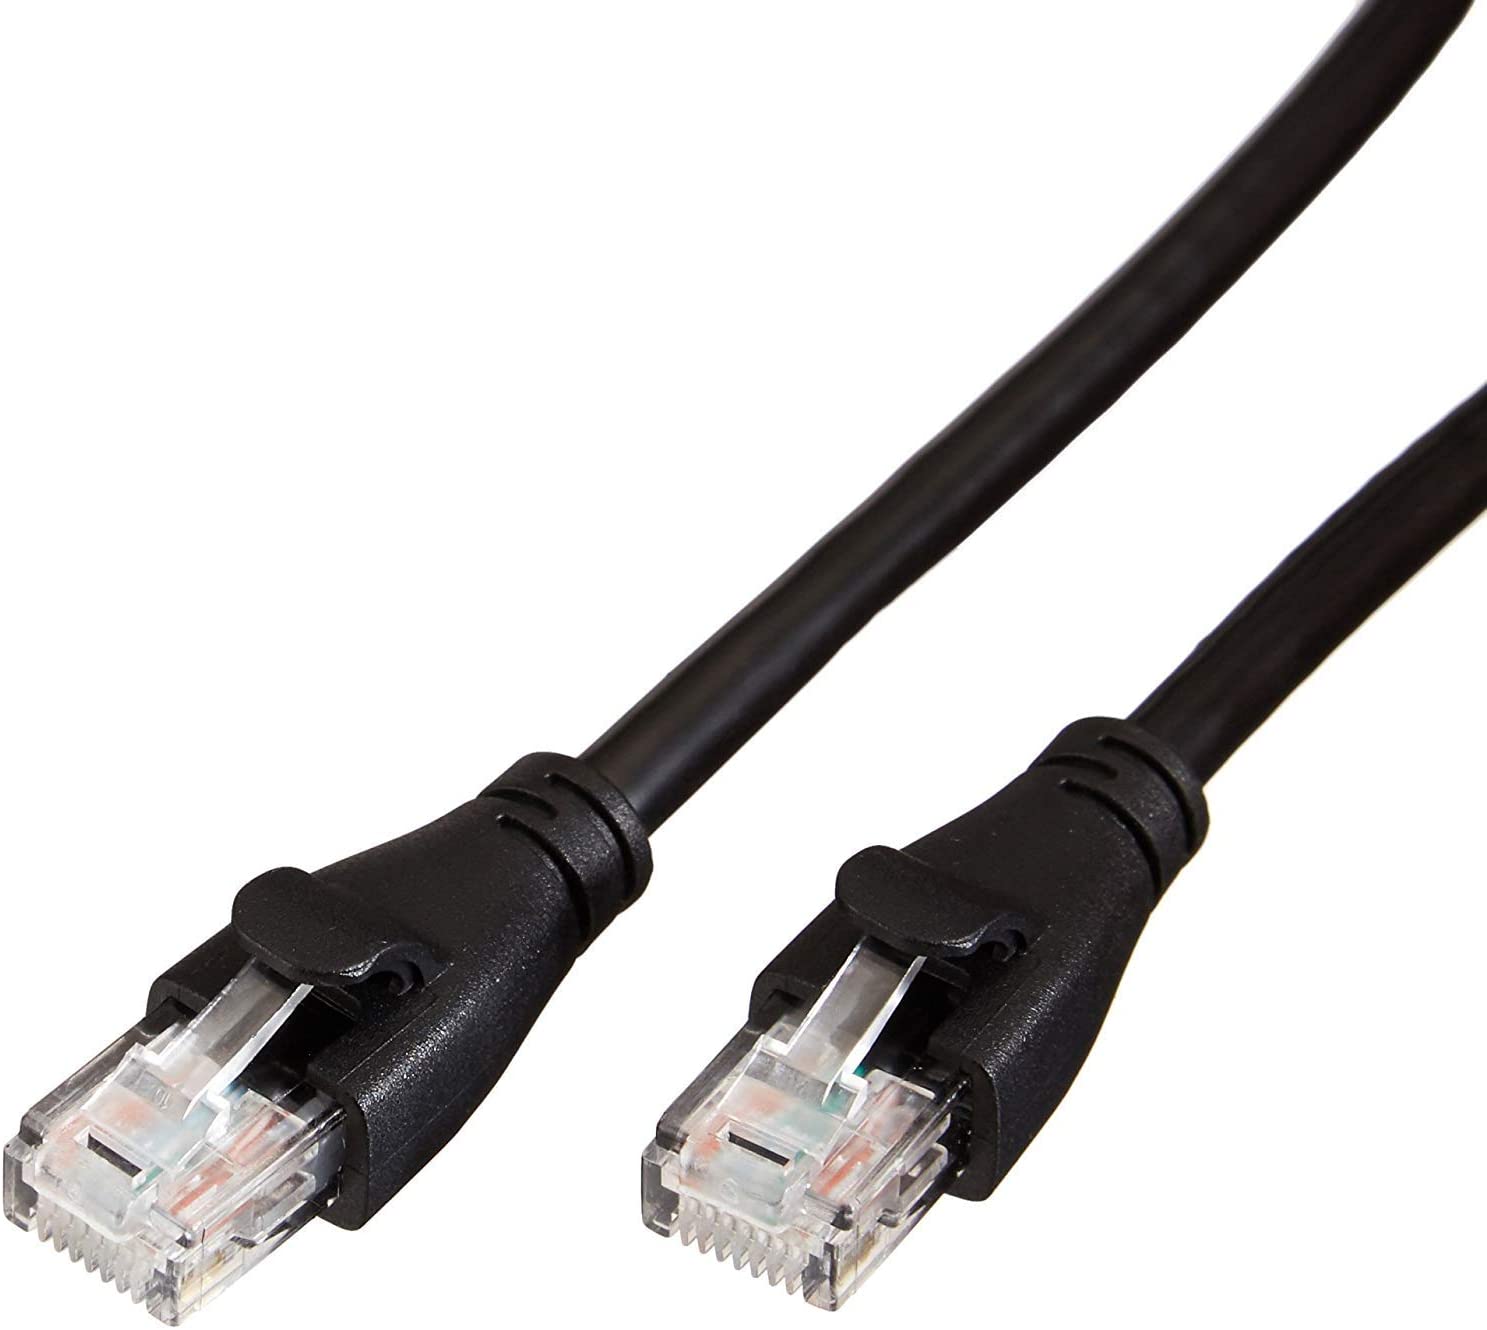 Cable de red Ethernet con conectores RJ45 (Cat. 6, 1000 Mbit/s, 3 m)